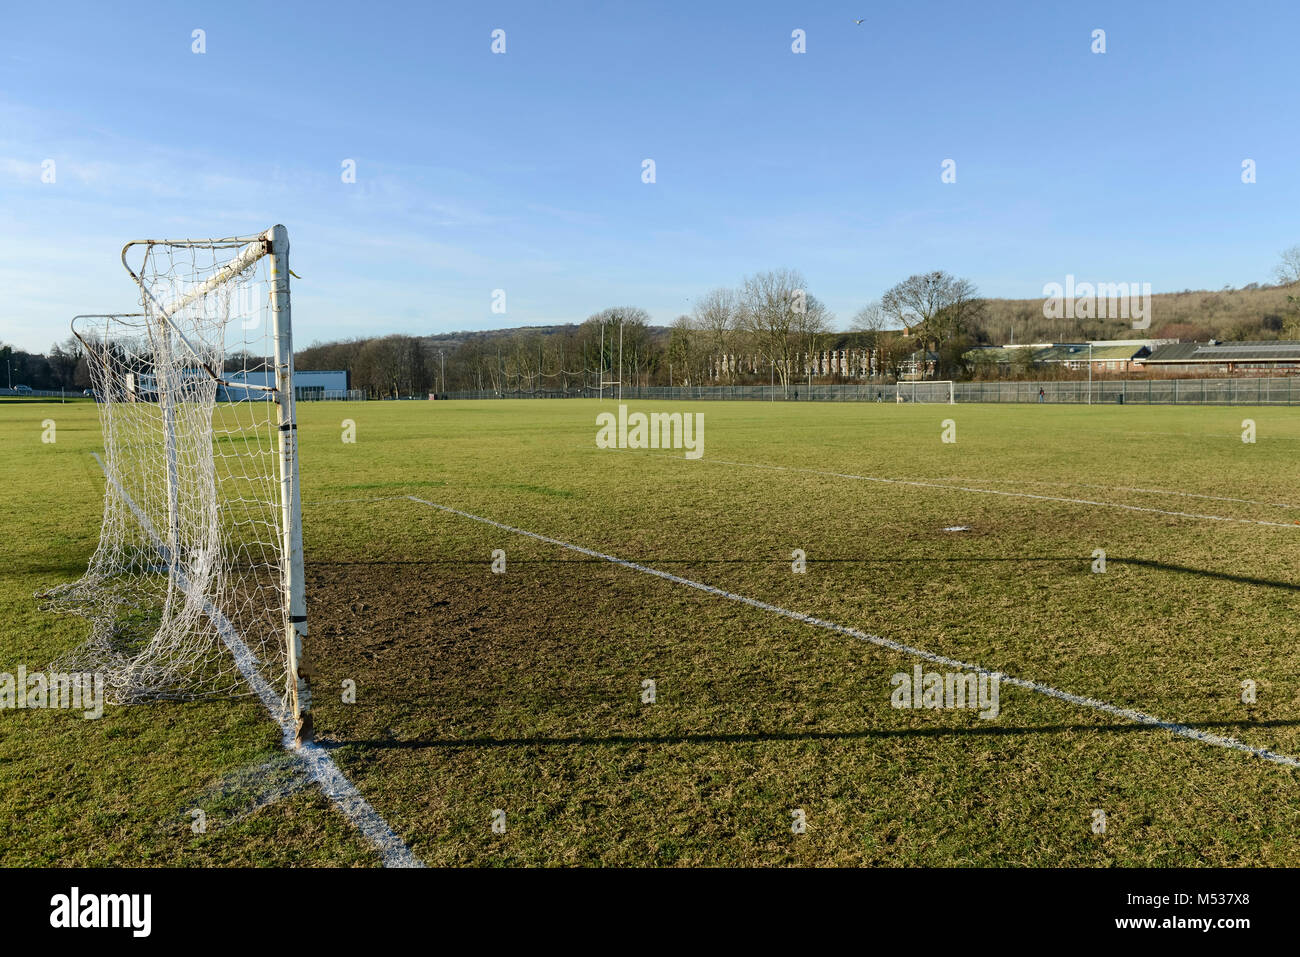 Terrains de sport scolaire et emplacements marqués pour les sports comme le football et rugby avec de l'herbe coupé nettement Banque D'Images